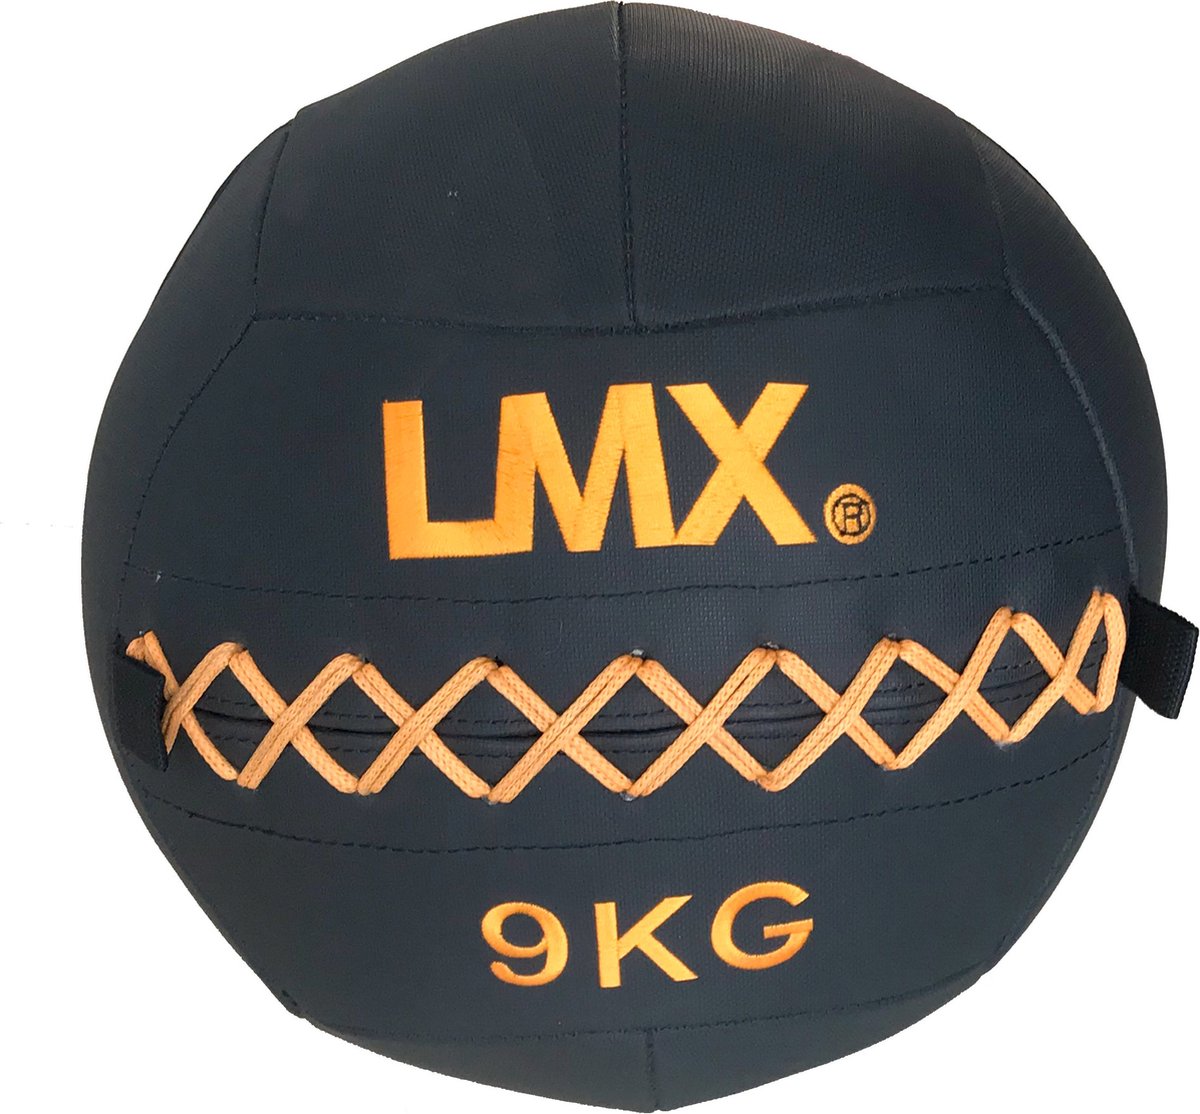 LMX. Wallball Premium l 9kg